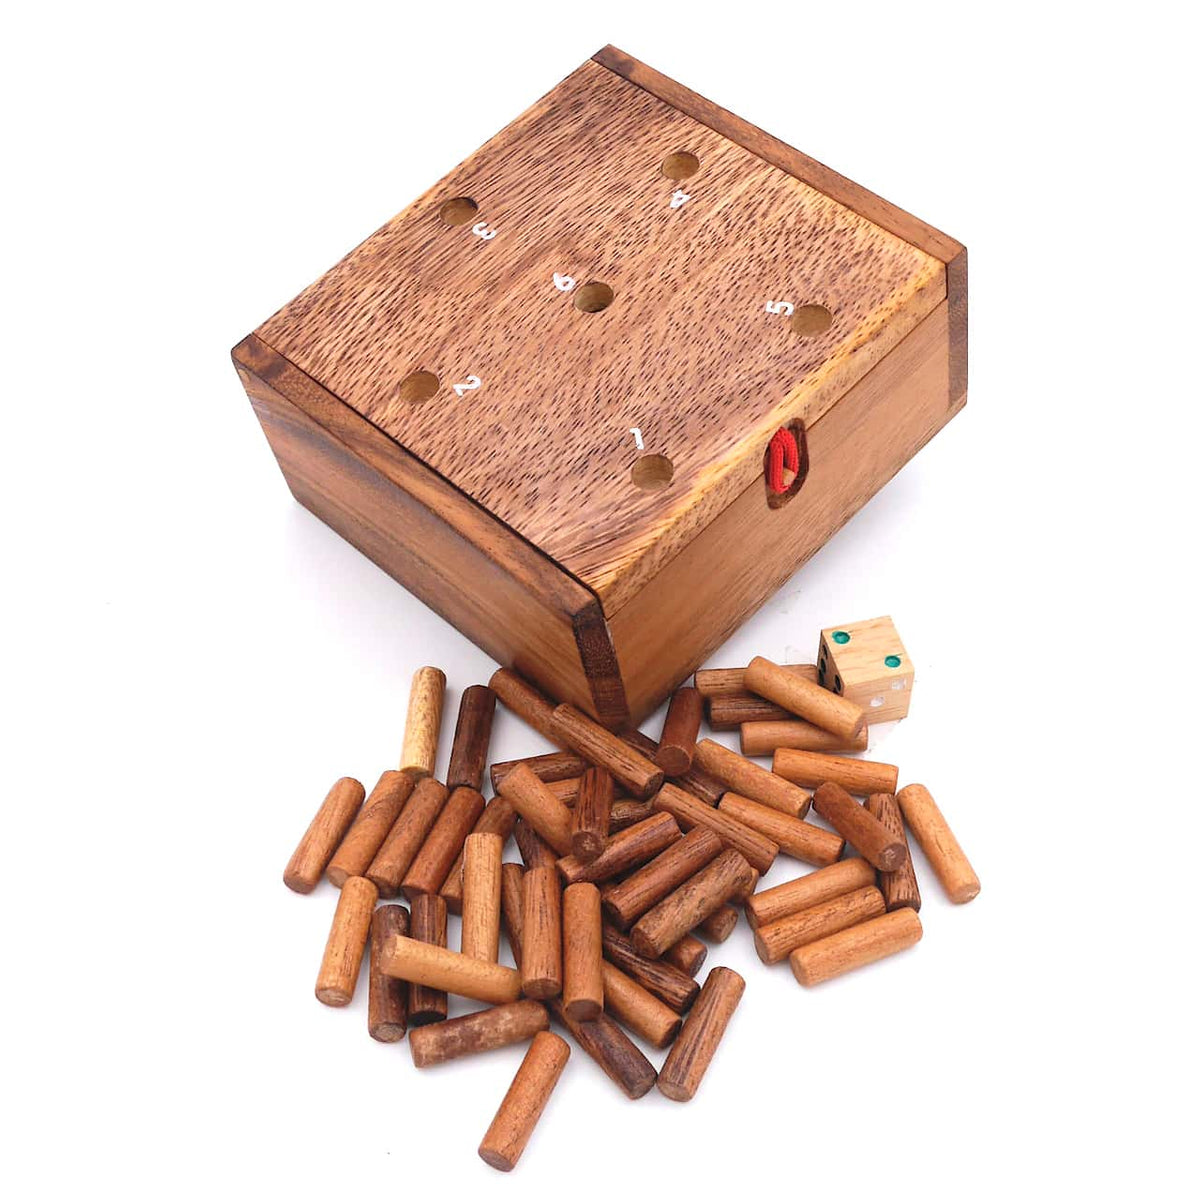 Holzbox mit Zahlen von 1 - 6 auf dem Deckel. Davor liegen die 50 Spielstäbchen und ein Holzwürfel.